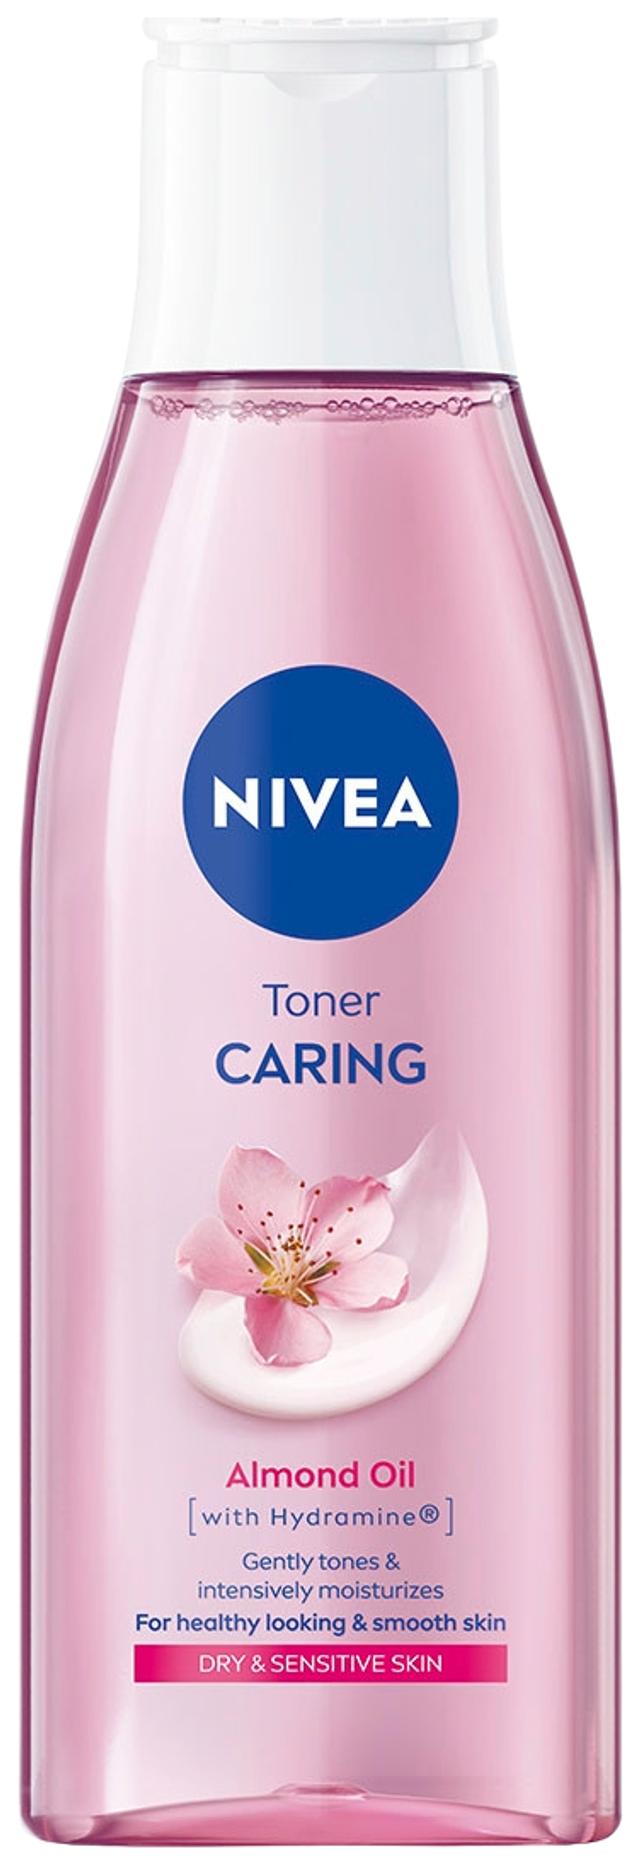 NIVEA 200ml Daily Essentials Soothing Toner kasvovesi kuivalle iholle